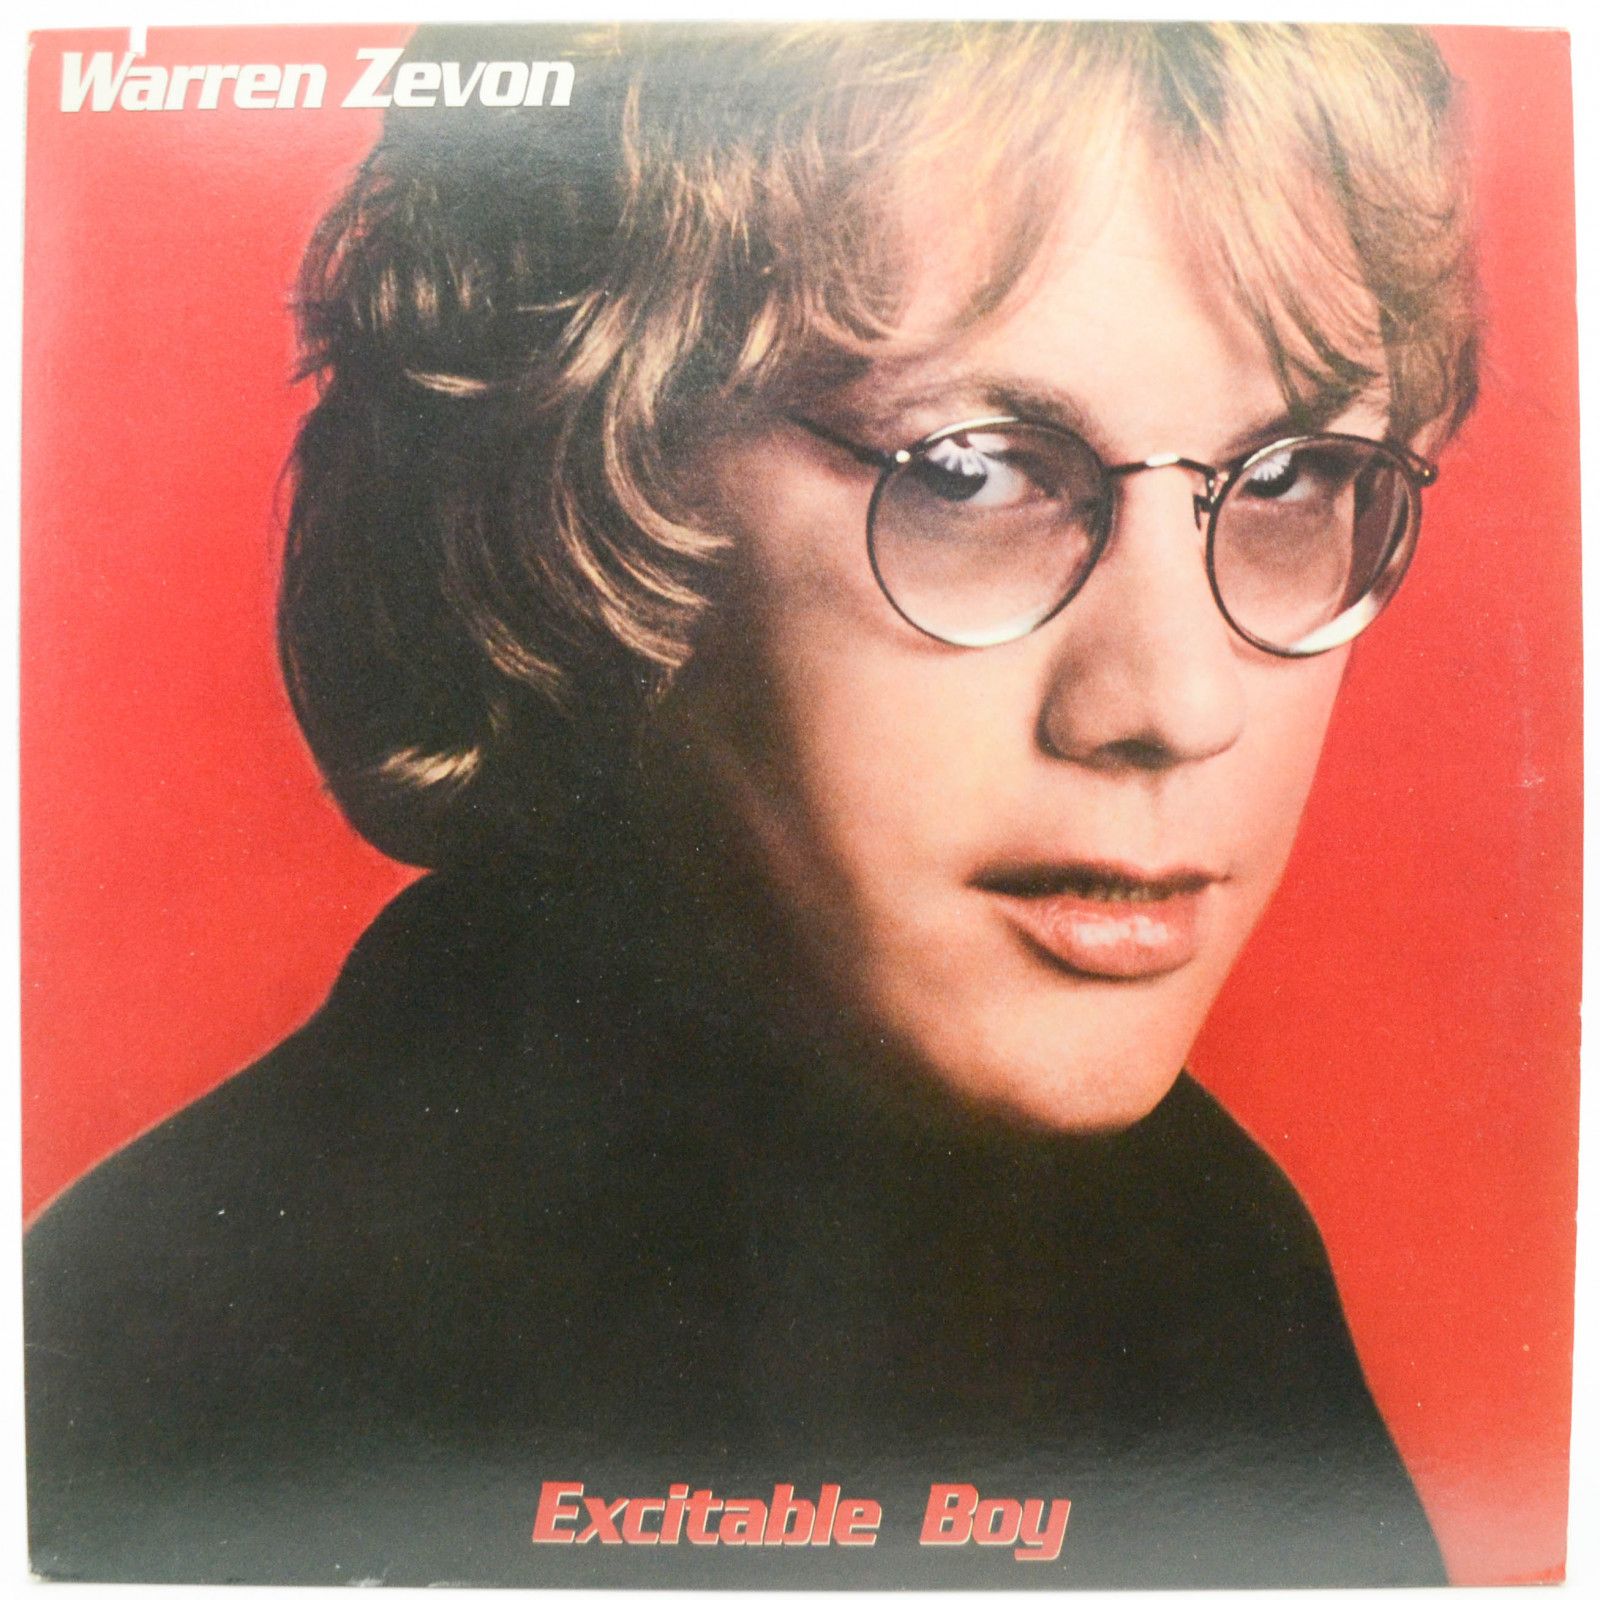 Warren Zevon — Excitable Boy (1-st, USA), 1978